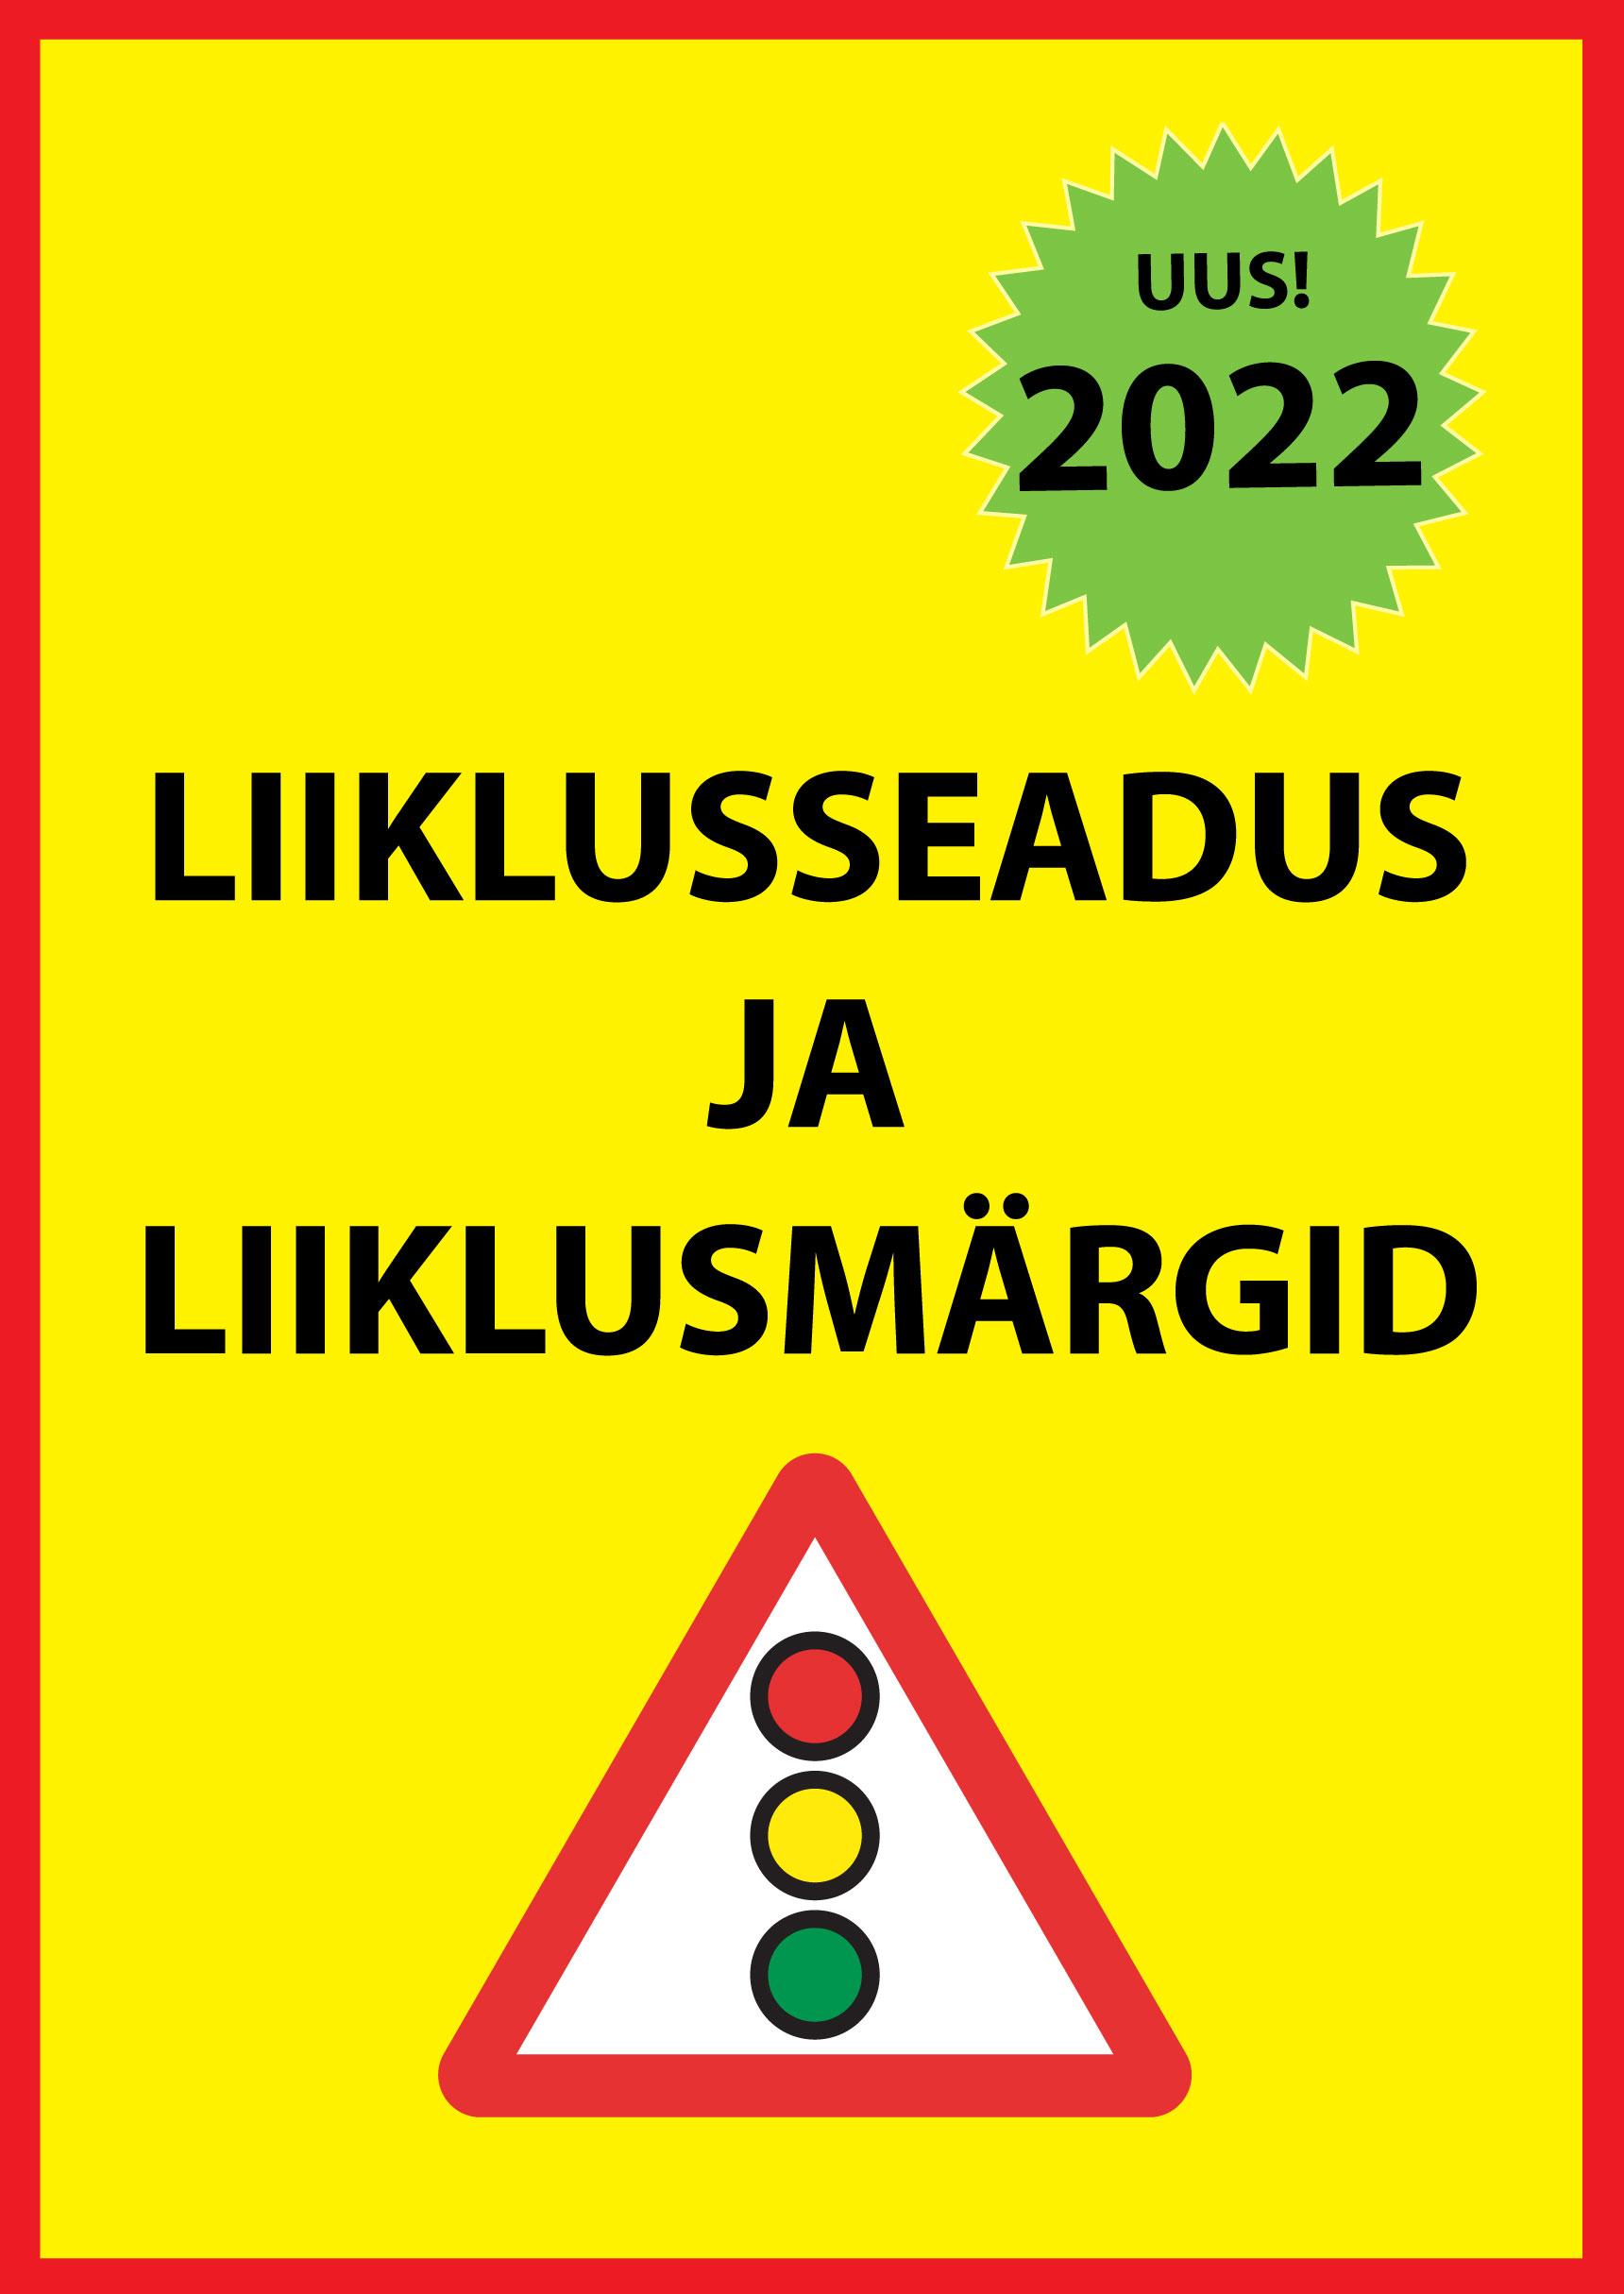 LIIKLUSSEADUS JA LIIKLUSMÄRGID 2022